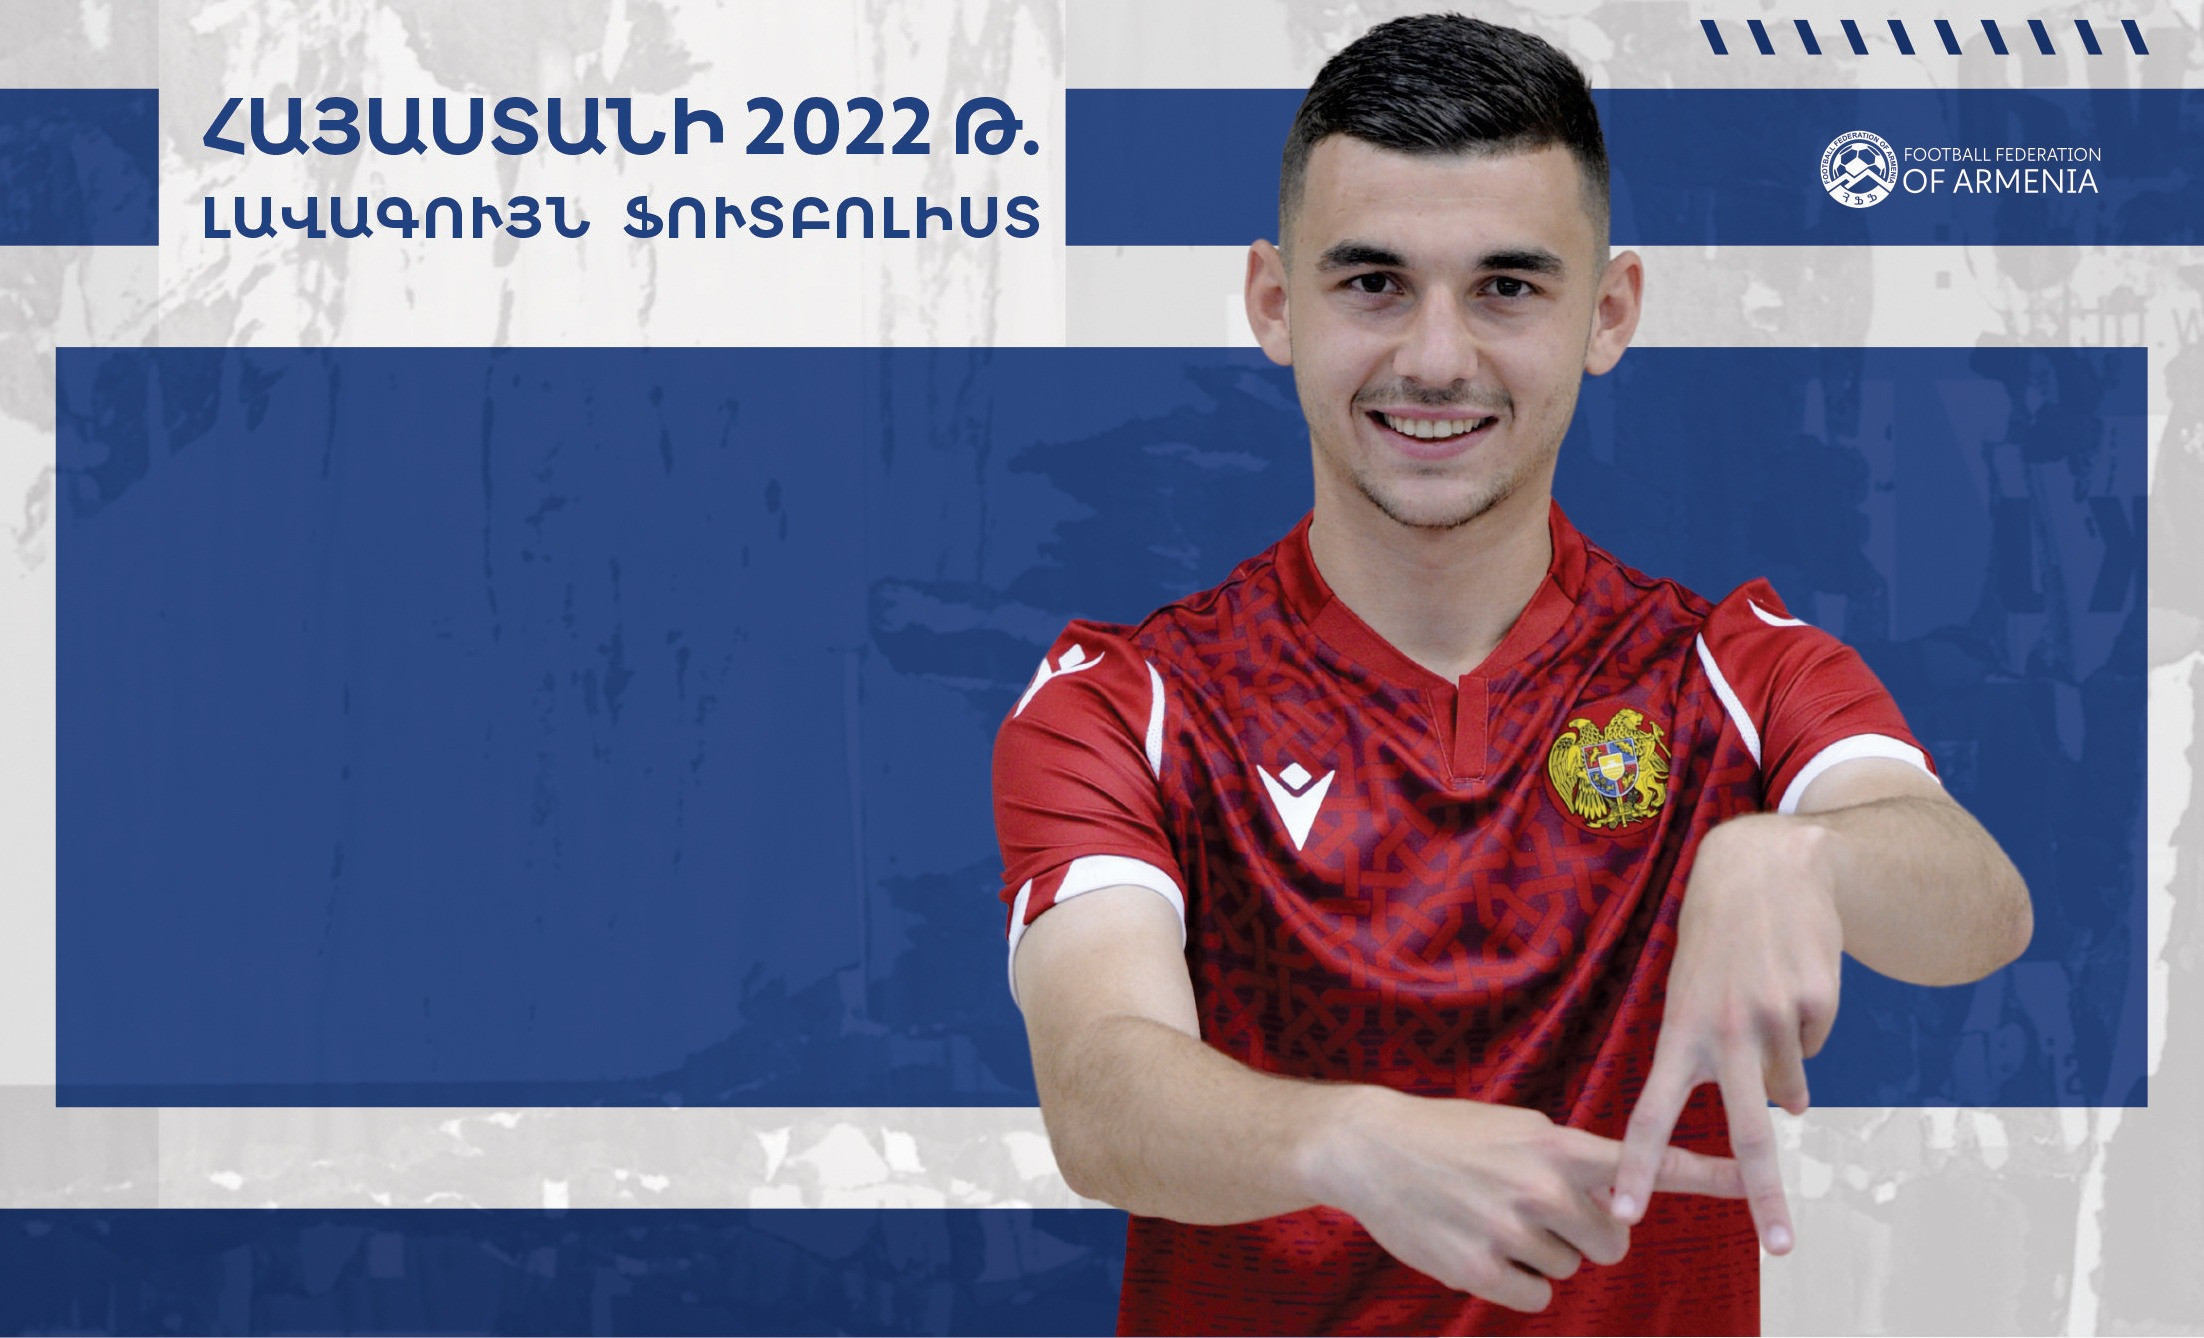 Эдуард Сперцян - лучший футболист Армении 2022 года